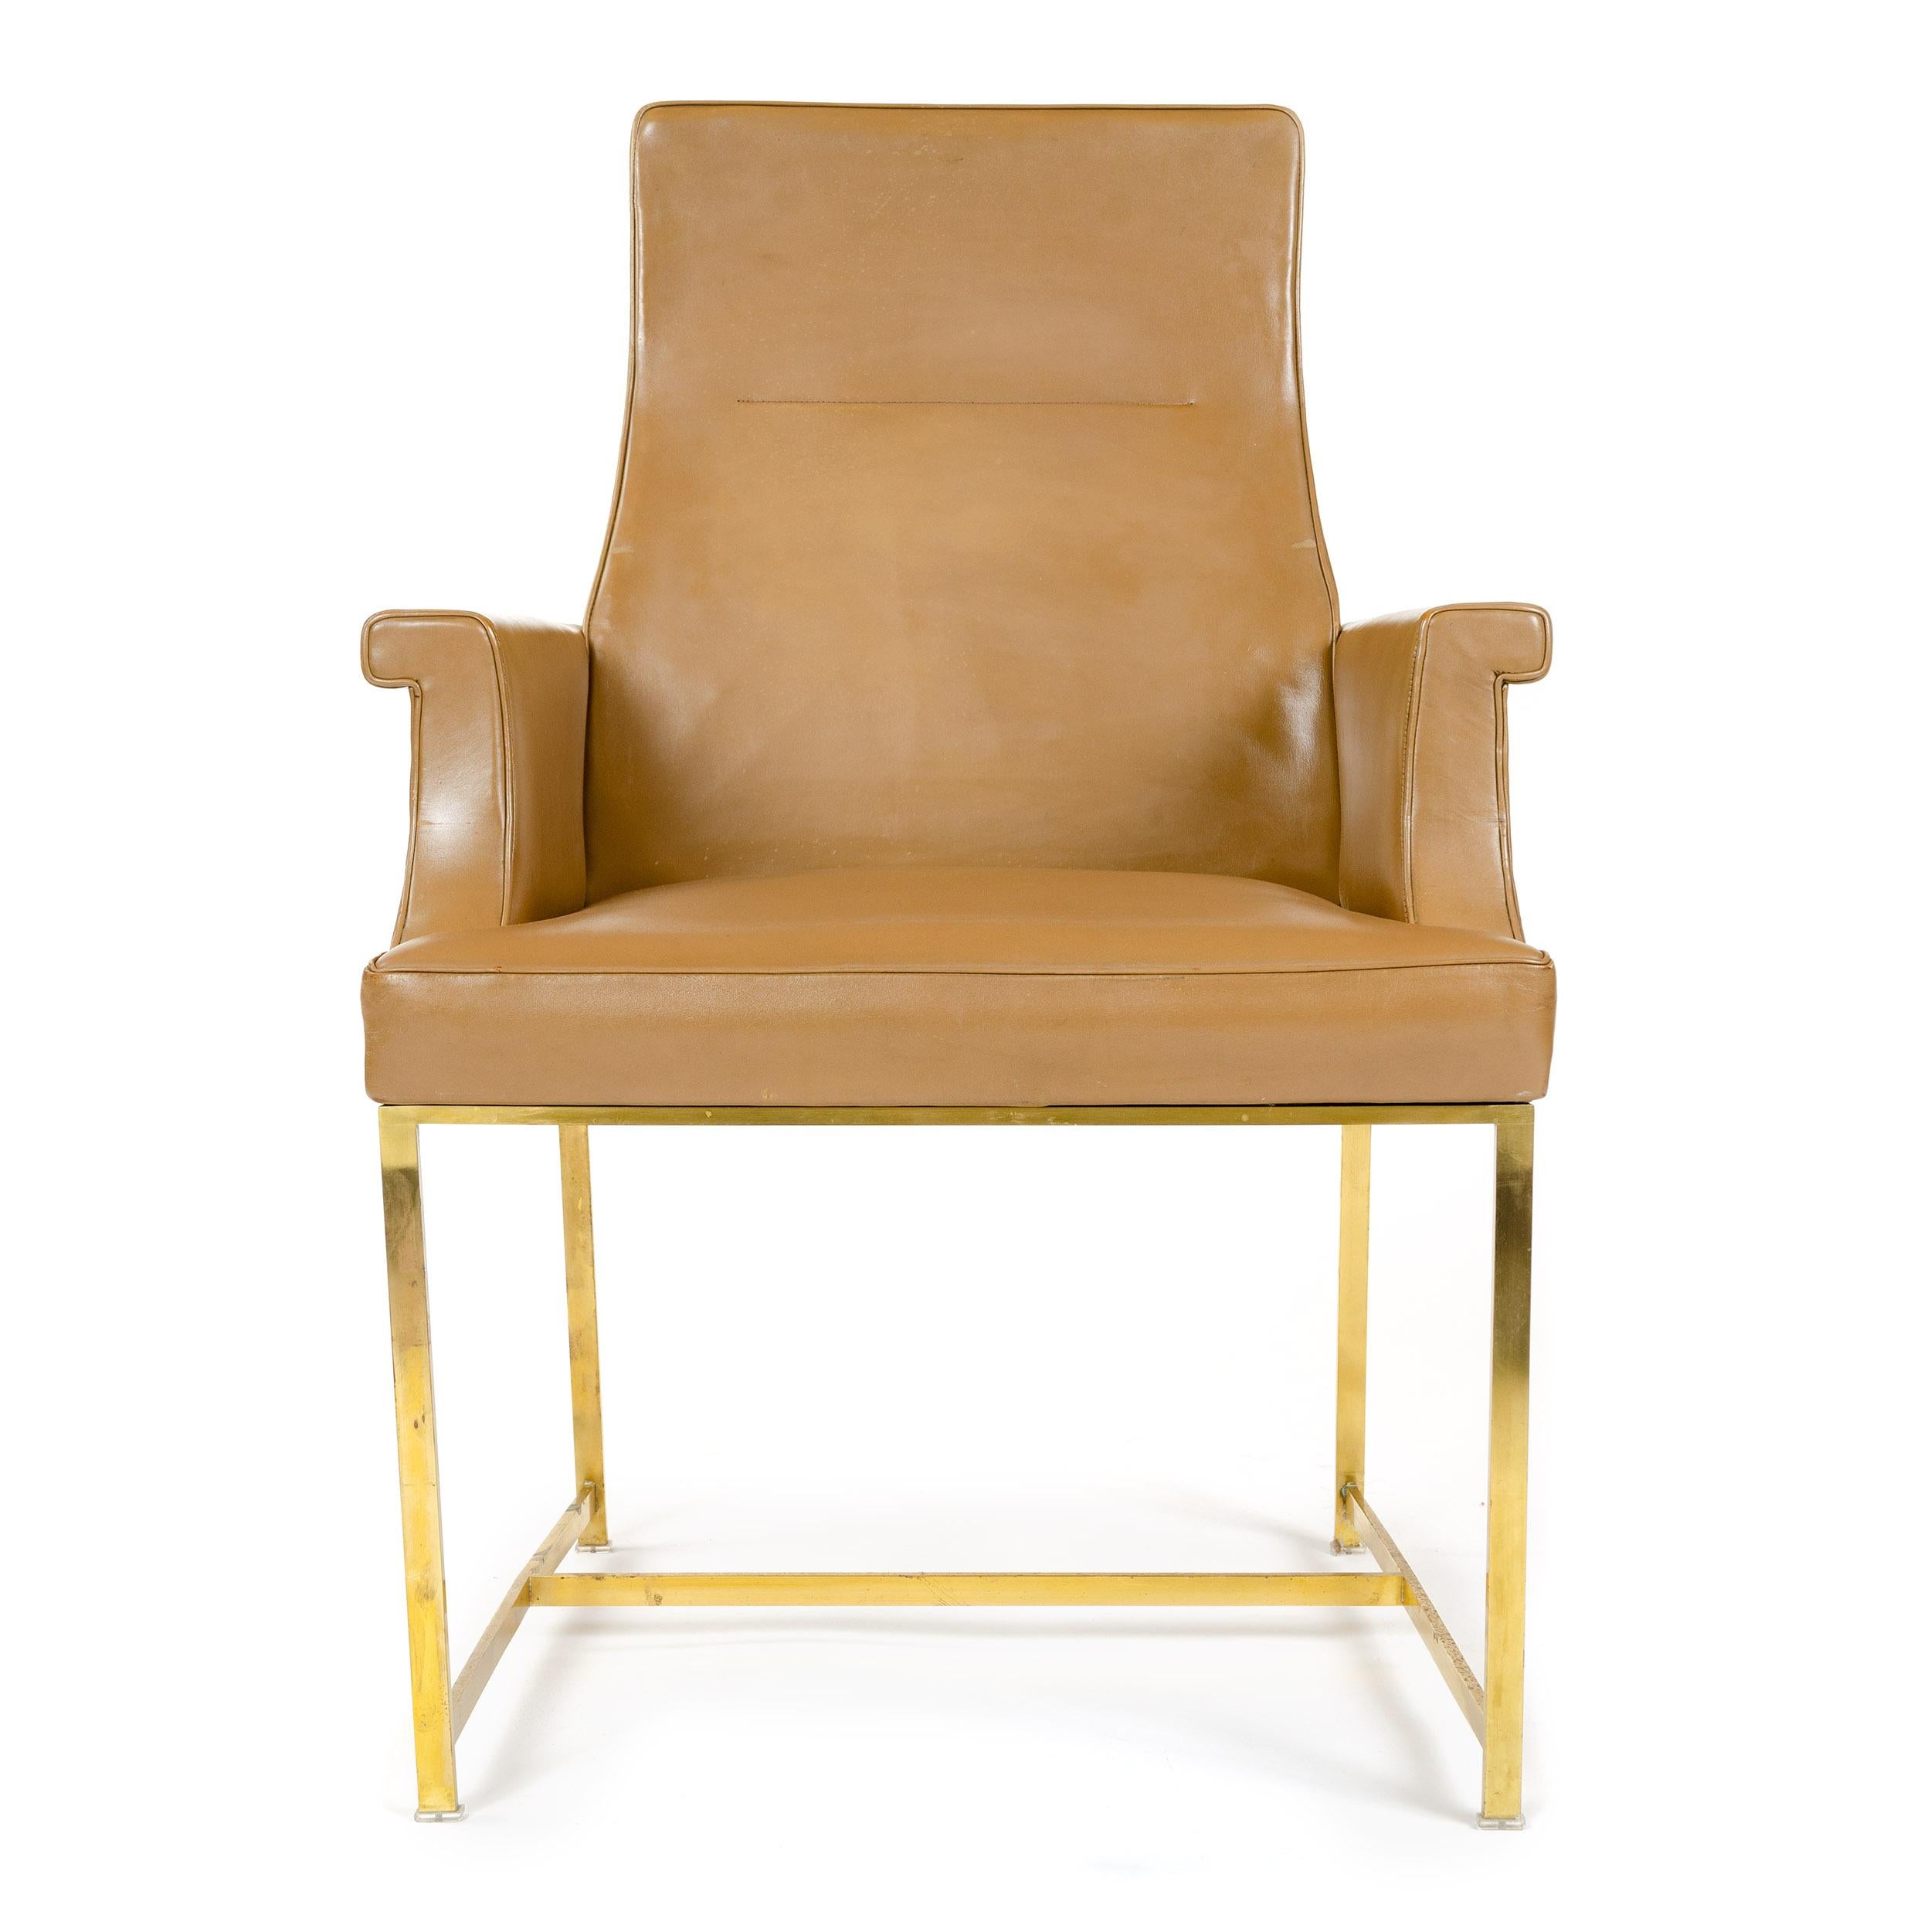 Ein Sessel mit hoher Rückenlehne, originaler hellbrauner Lederpolsterung und massivem Messinggestell.